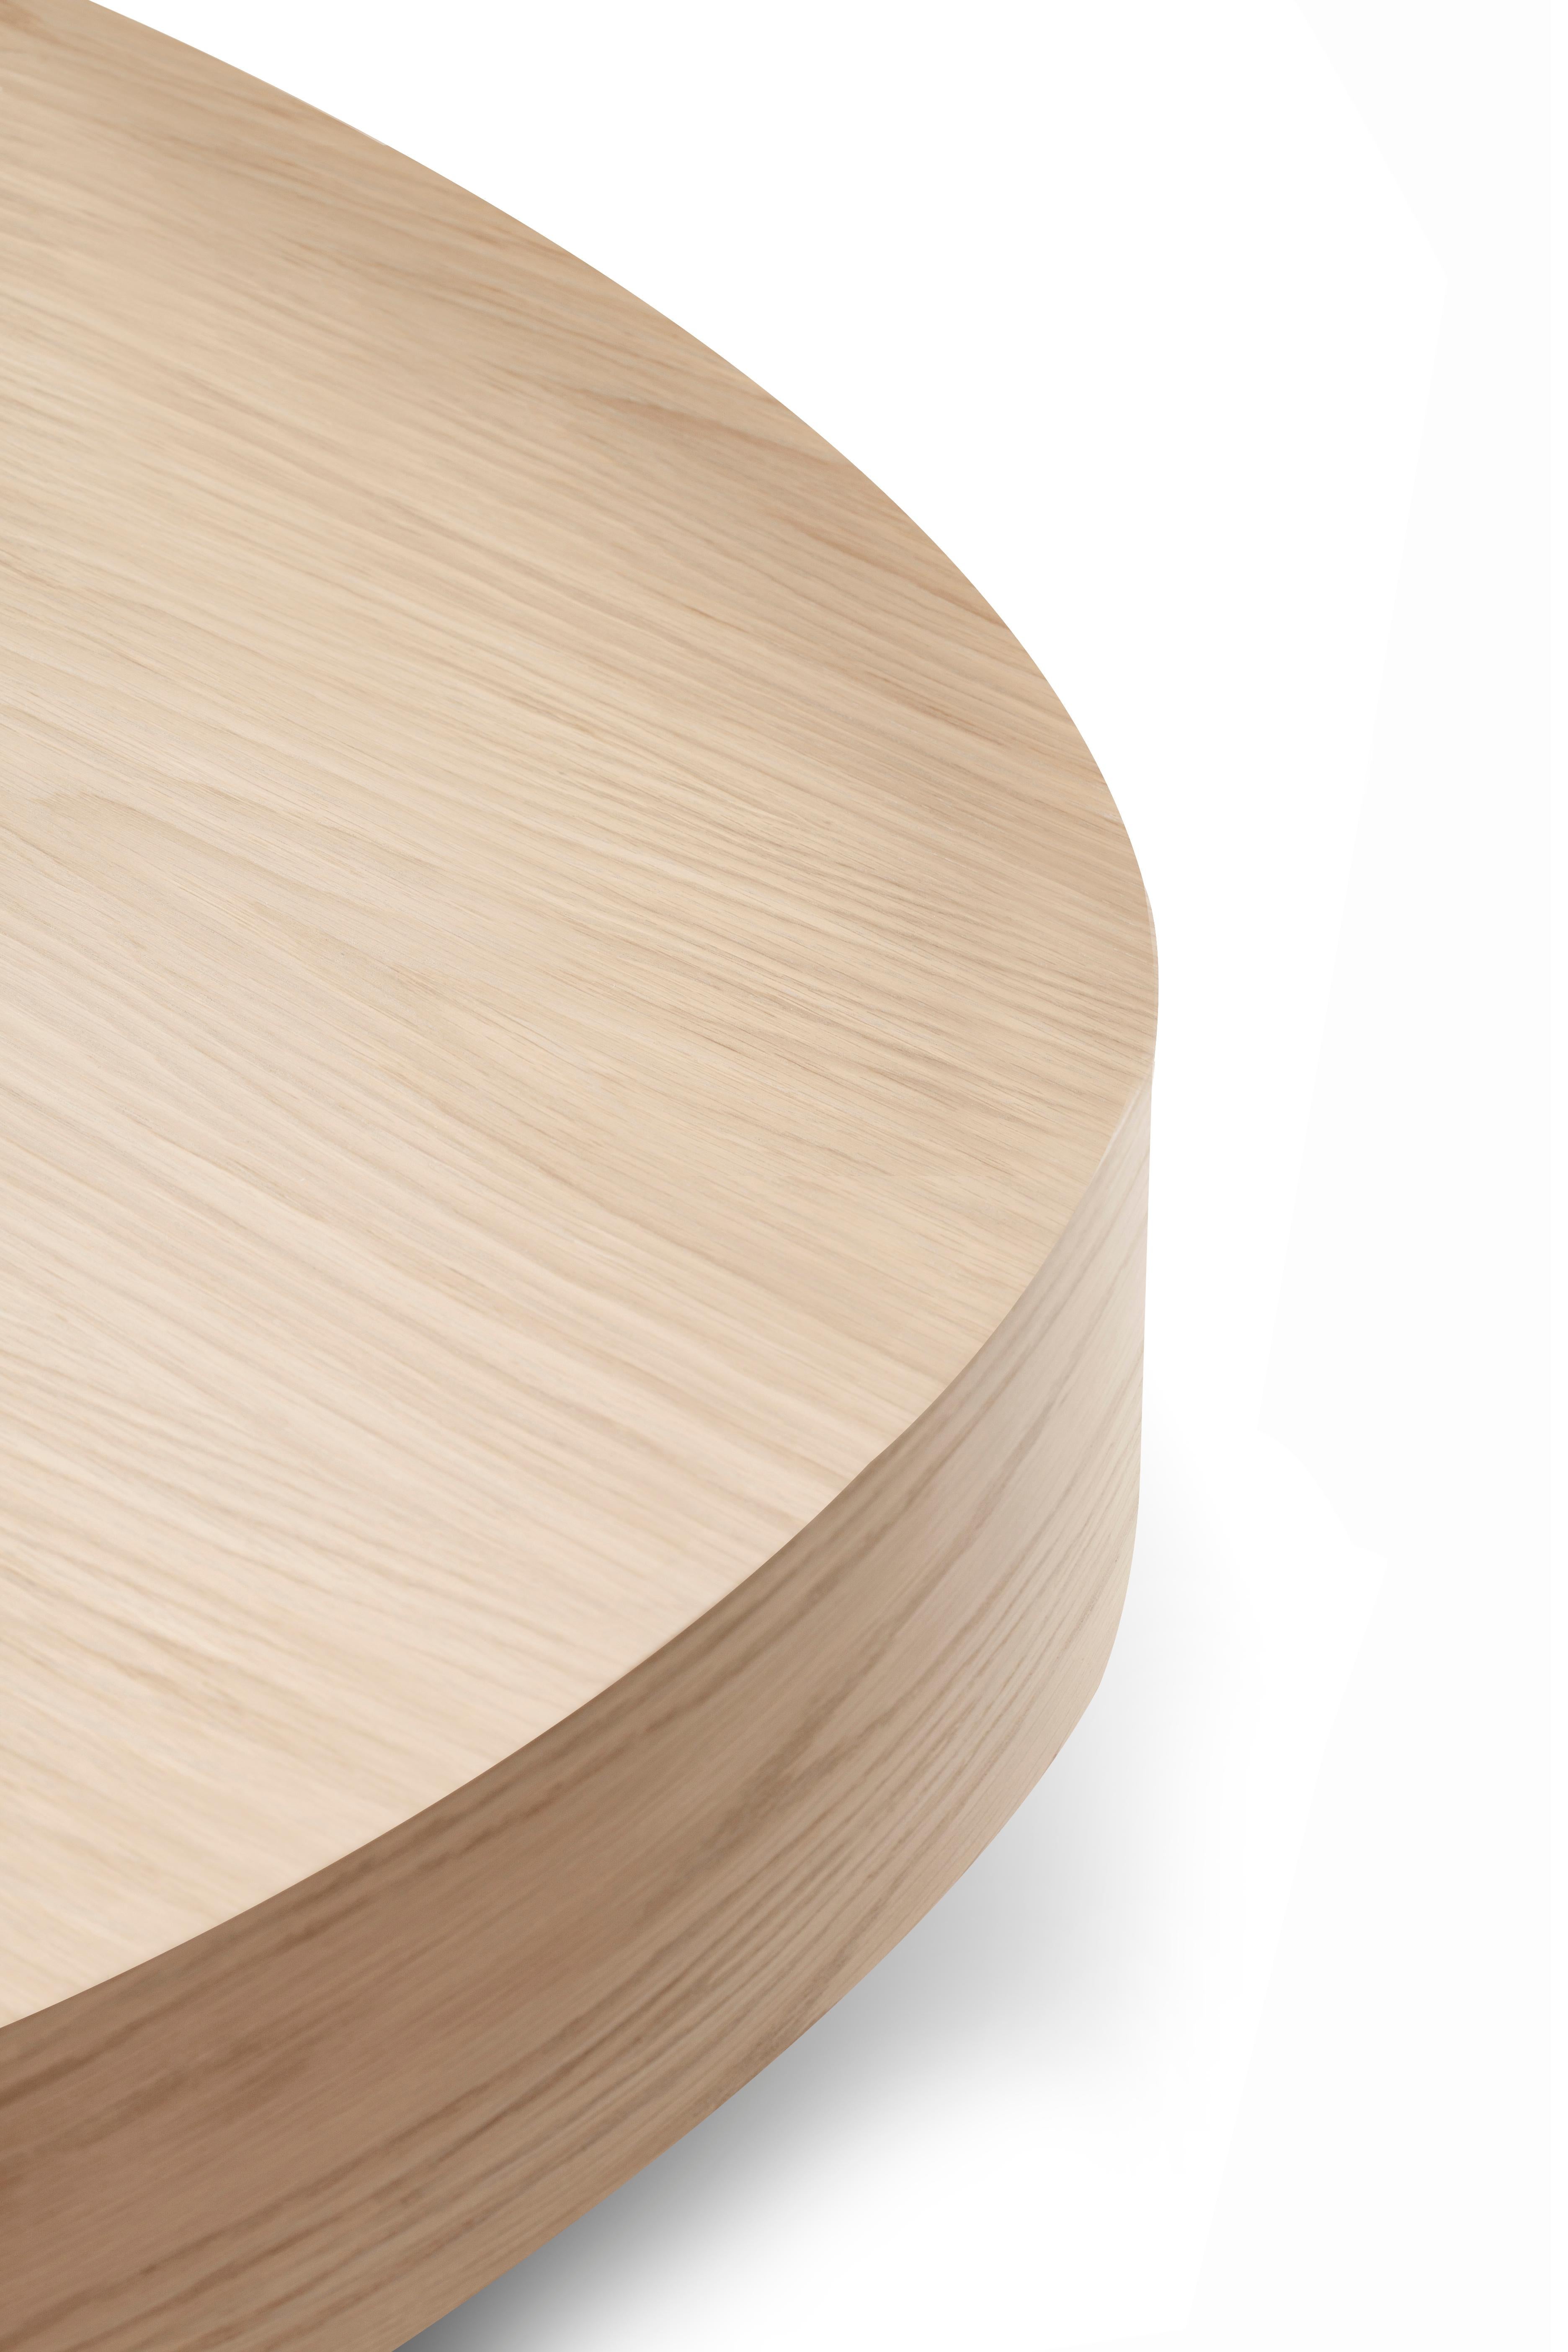 Bassa Beistelltisch aus Eichenholz von Collector Studio

Es ist, als hätte man einen riesigen Block Eichenholz. Dieser Eichenholztisch sieht nicht nur wunderschön aus, sondern fühlt sich auch unglaublich gut an, da er mit einer glatten Oberfläche